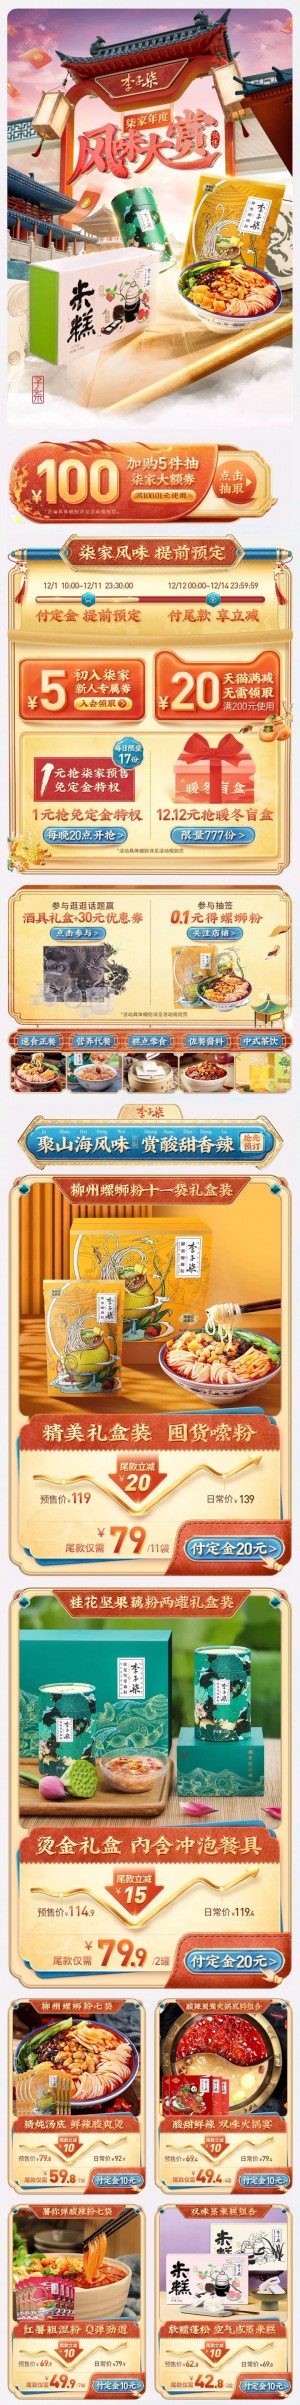 天猫首页李子柒 食品 零食 酒水 双12 双十二 手机端 M端活动首页设计